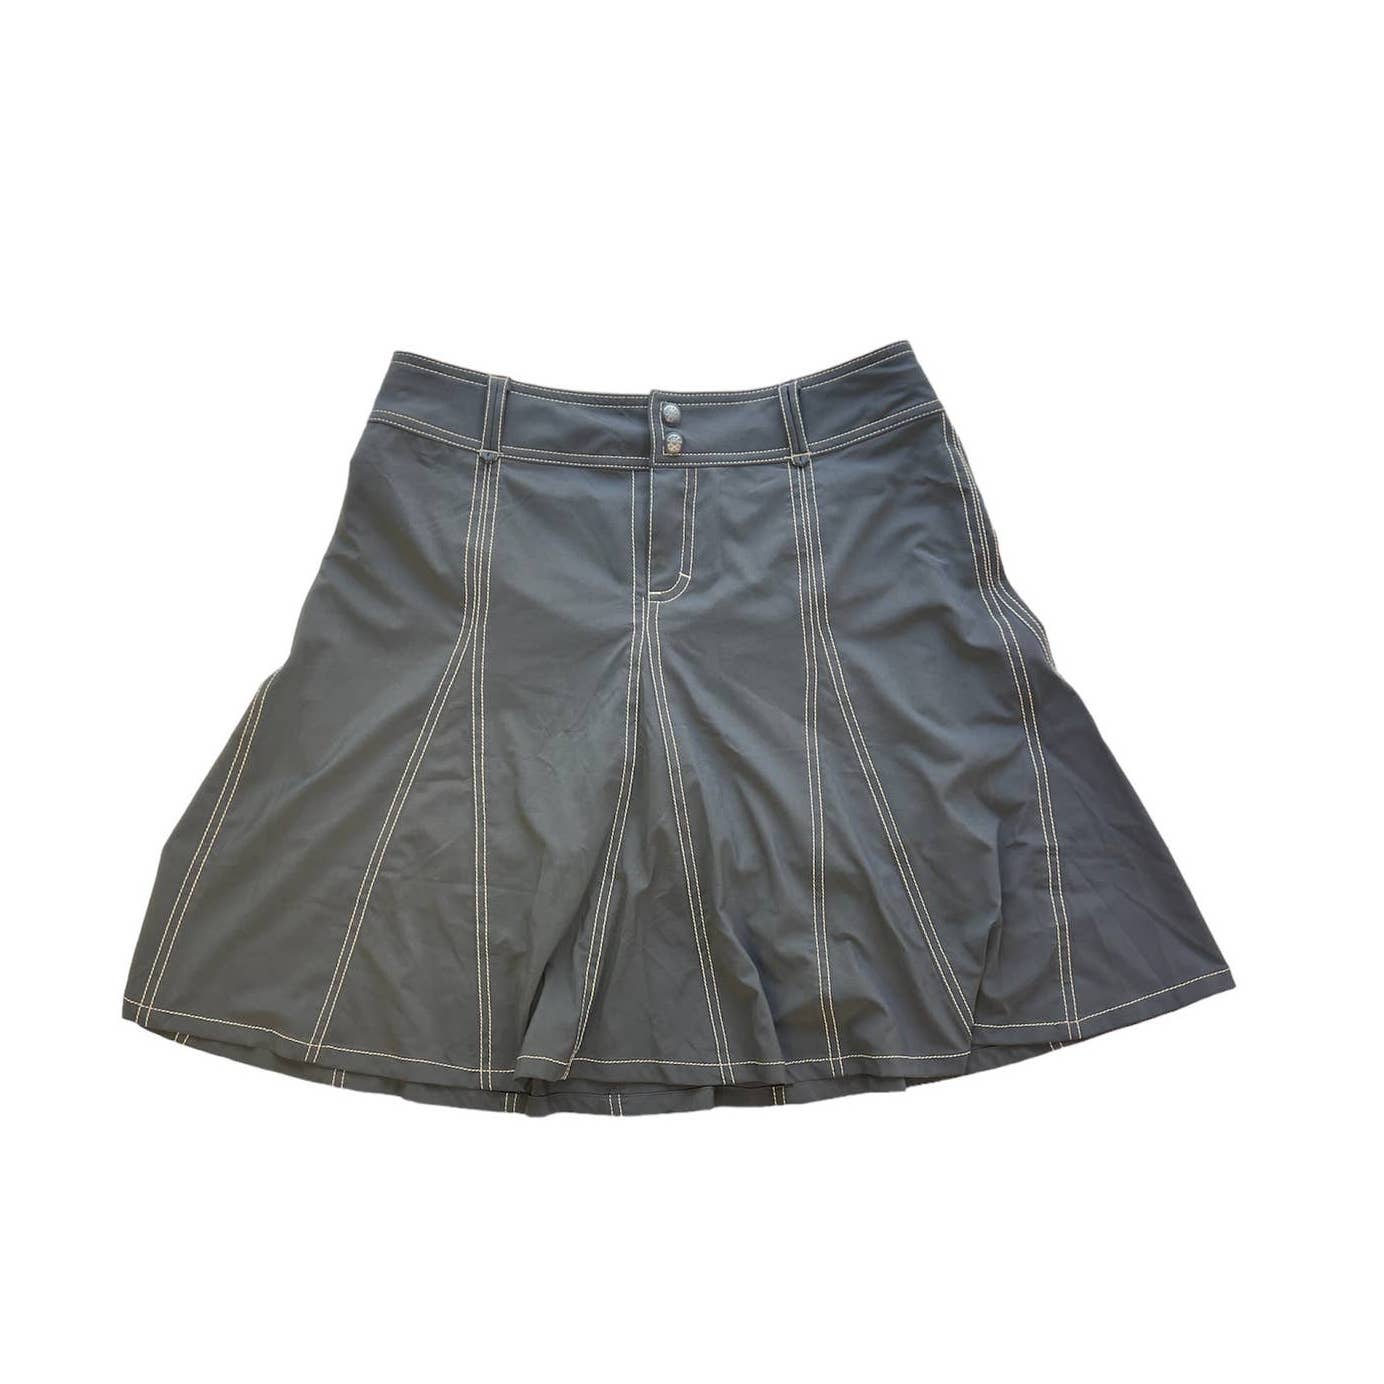 Athleta Skort Womens  8 Pockets Pleated Athletic Gray Athleisure Hiking Skirt